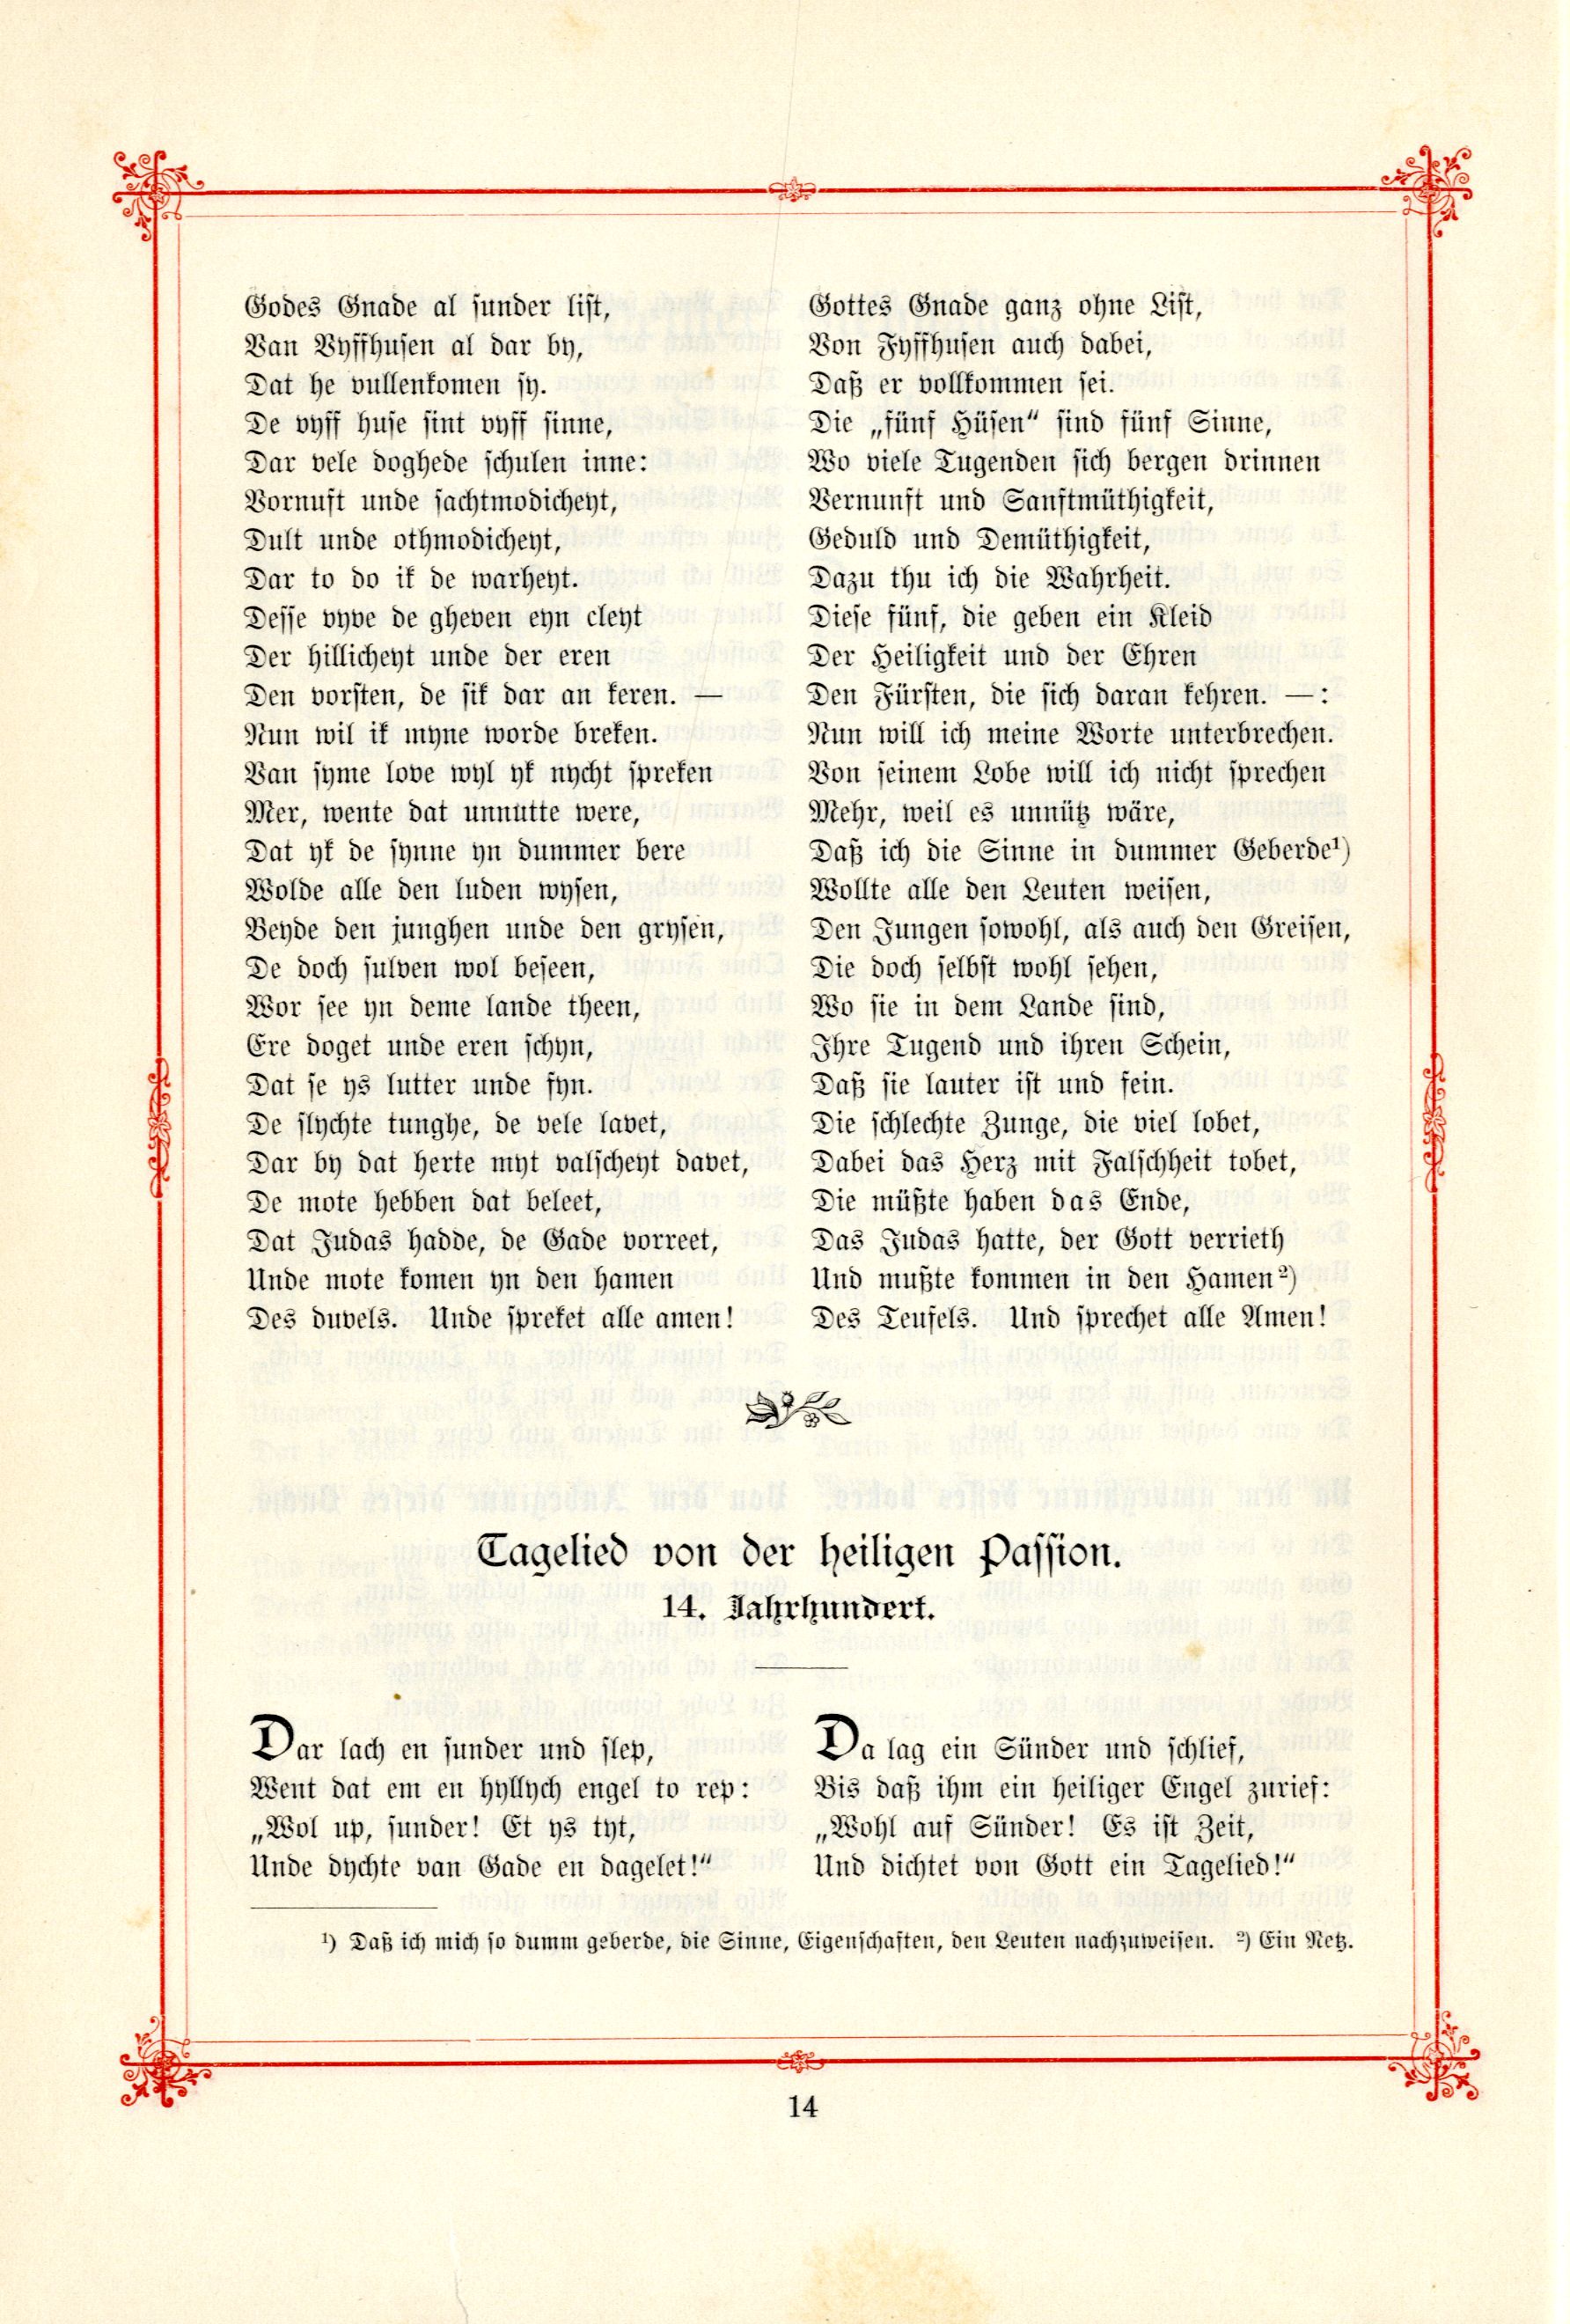 Tagelied von der heiligen Passion (1895) | 1. (14) Основной текст